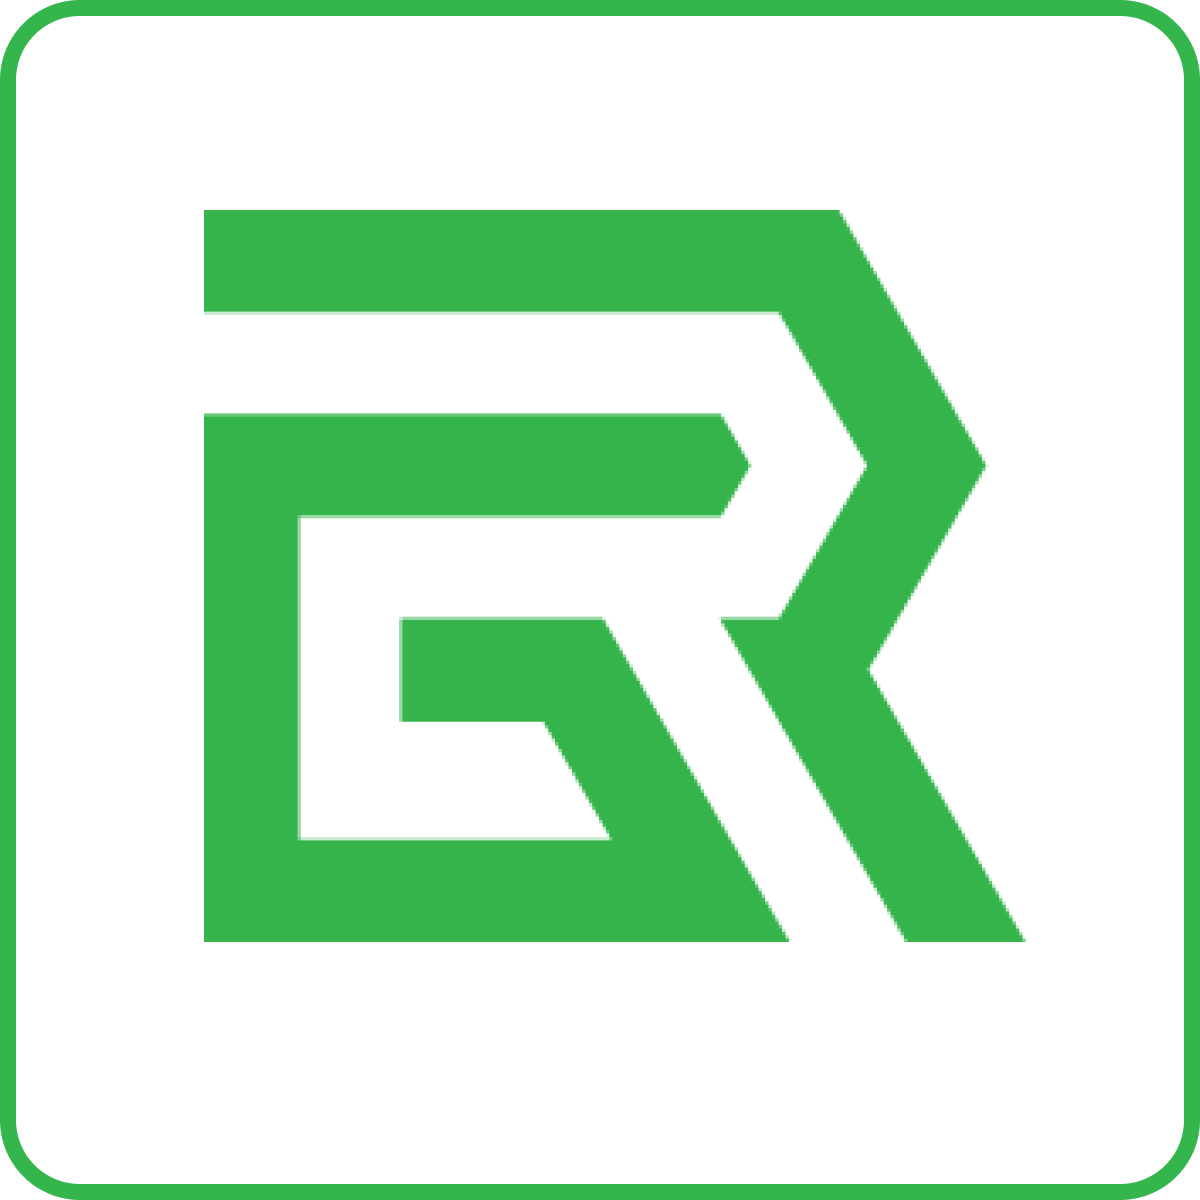 Green Room logo